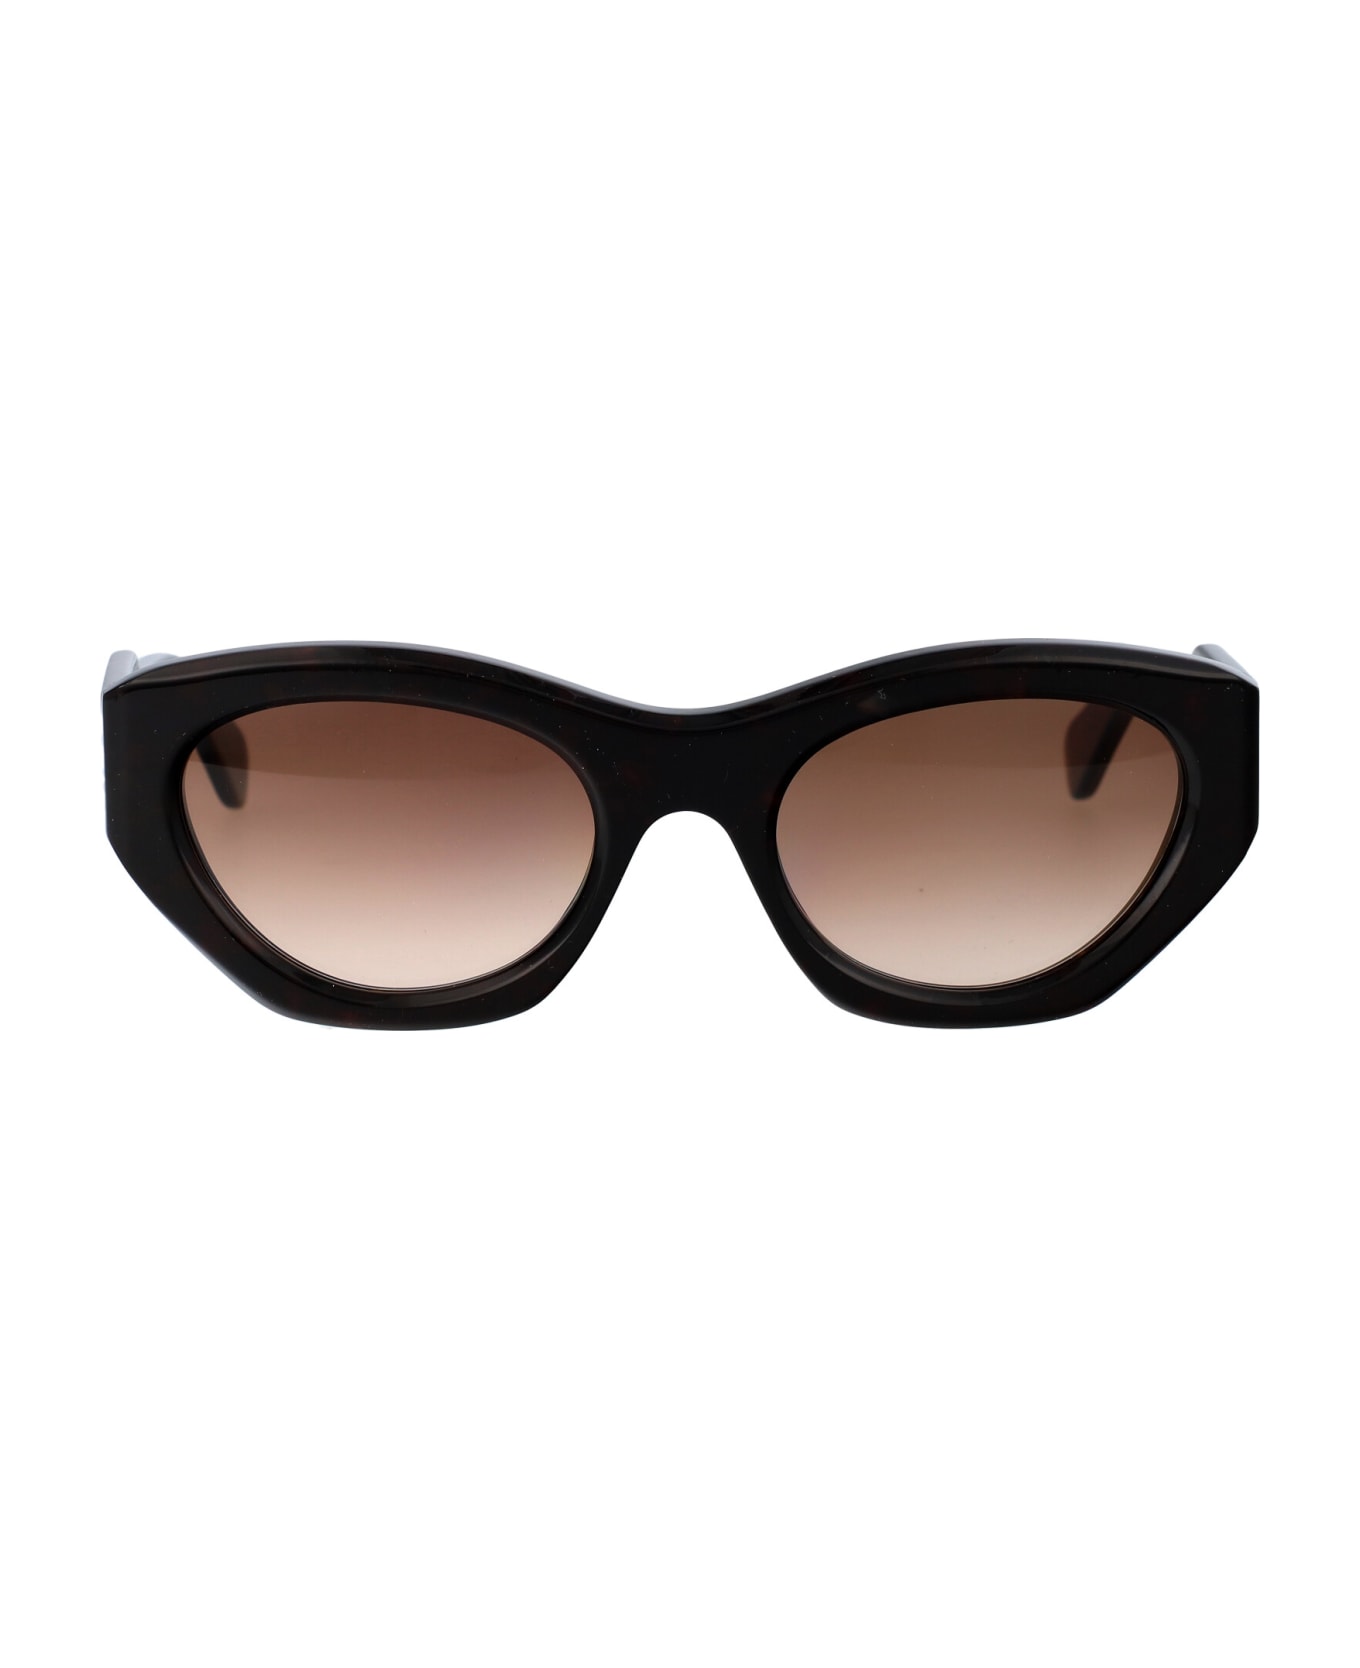 Chloé Eyewear Ch0220s Sunglasses - 002 HAVANA HAVANA BROWN